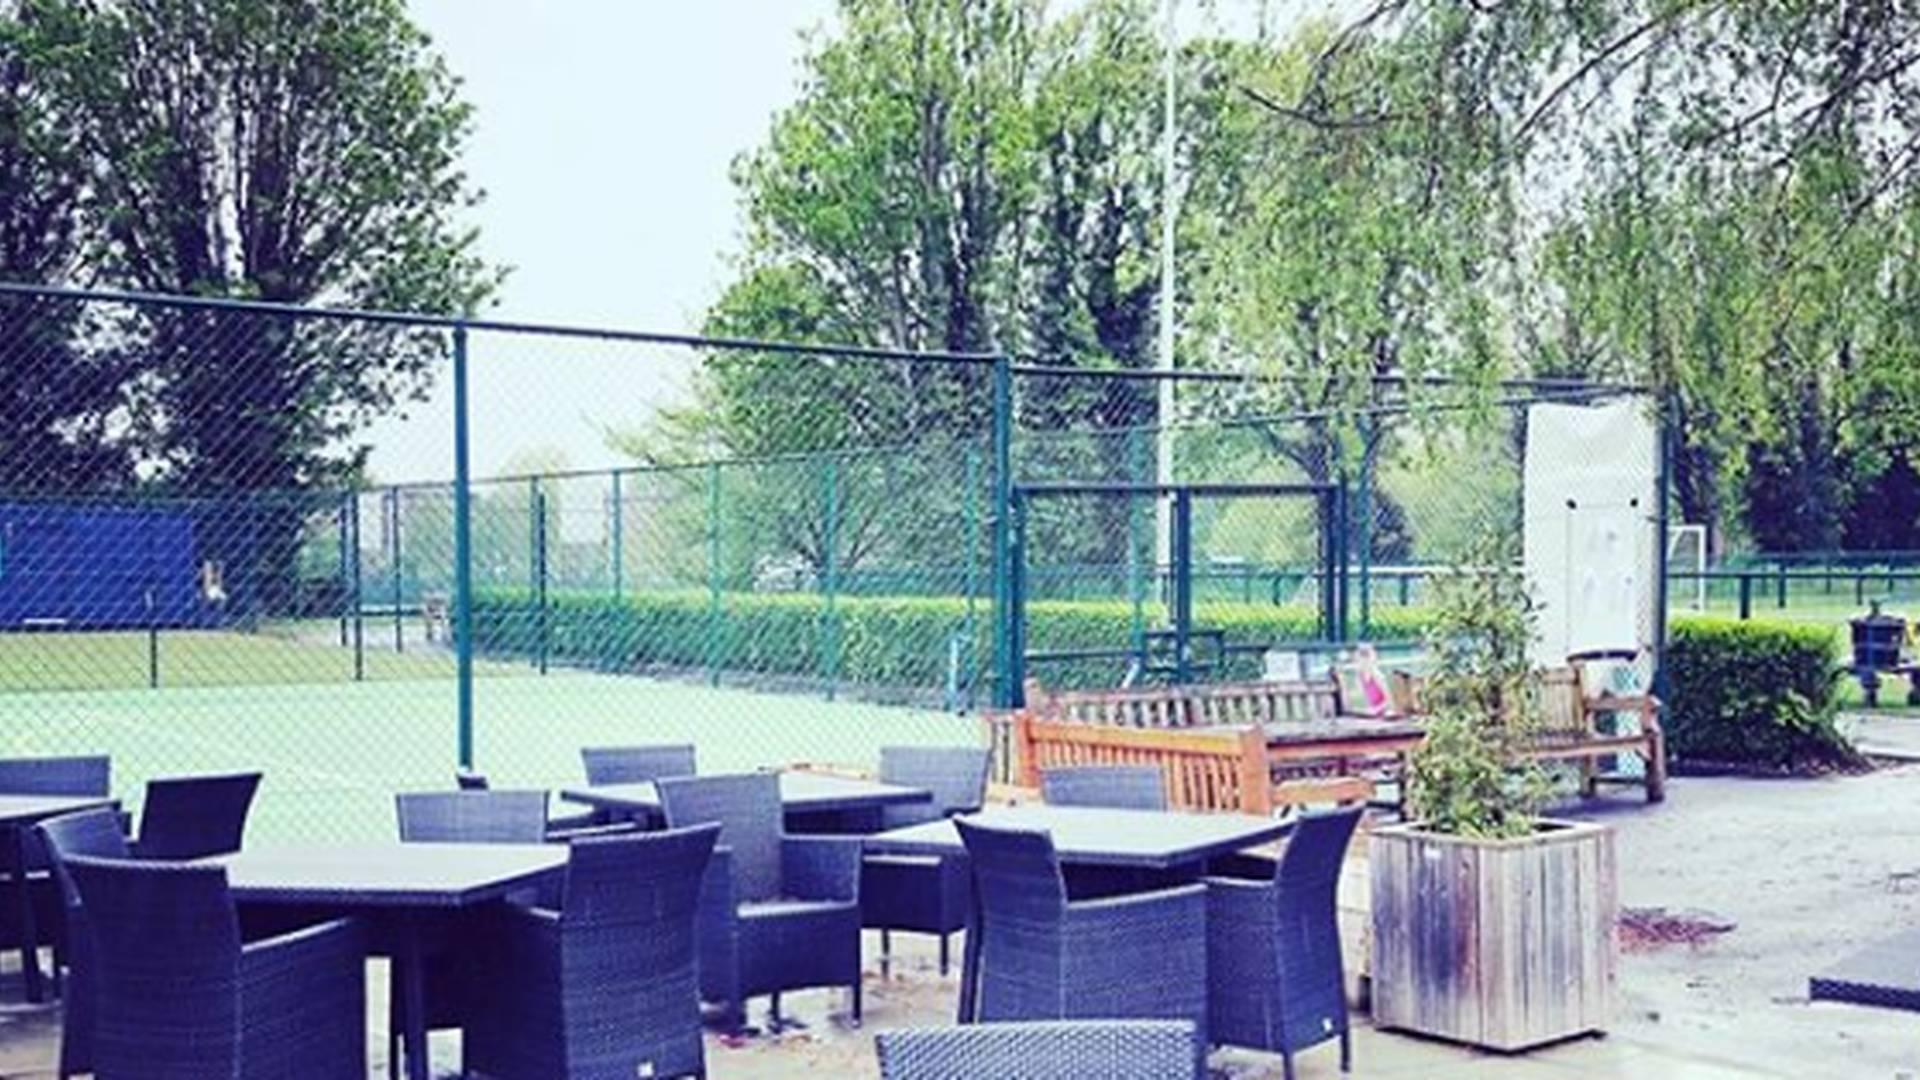 The West London Tennis Centre photo